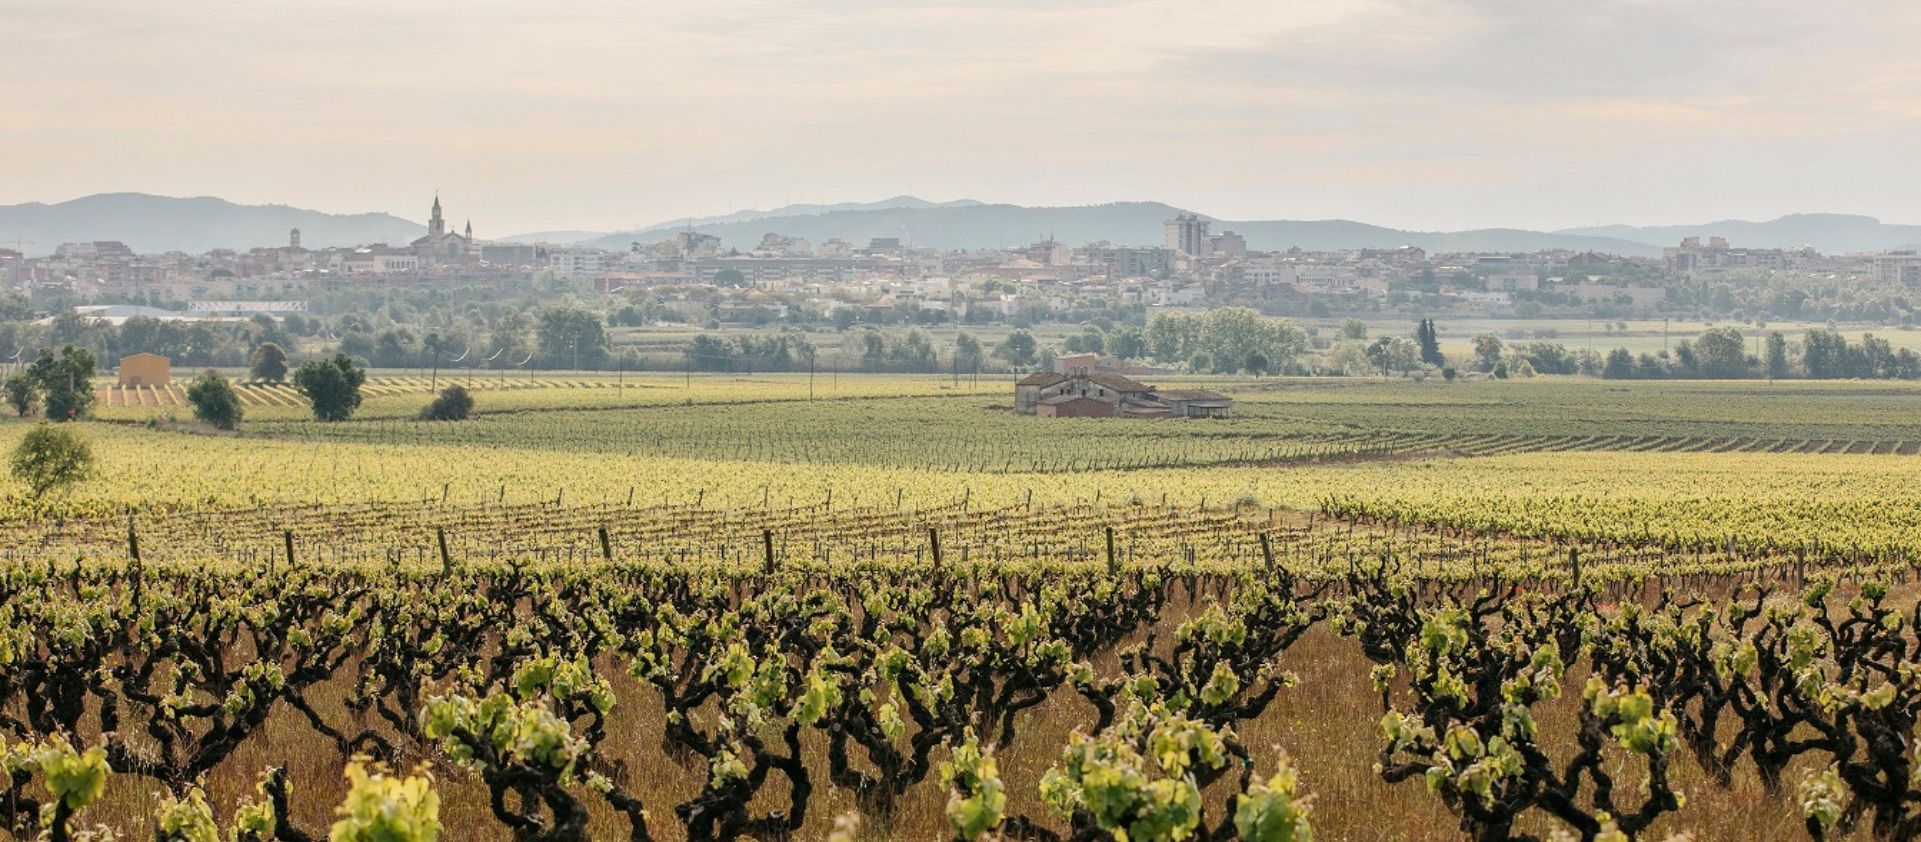 Viaje por las regiones vinícolas de España